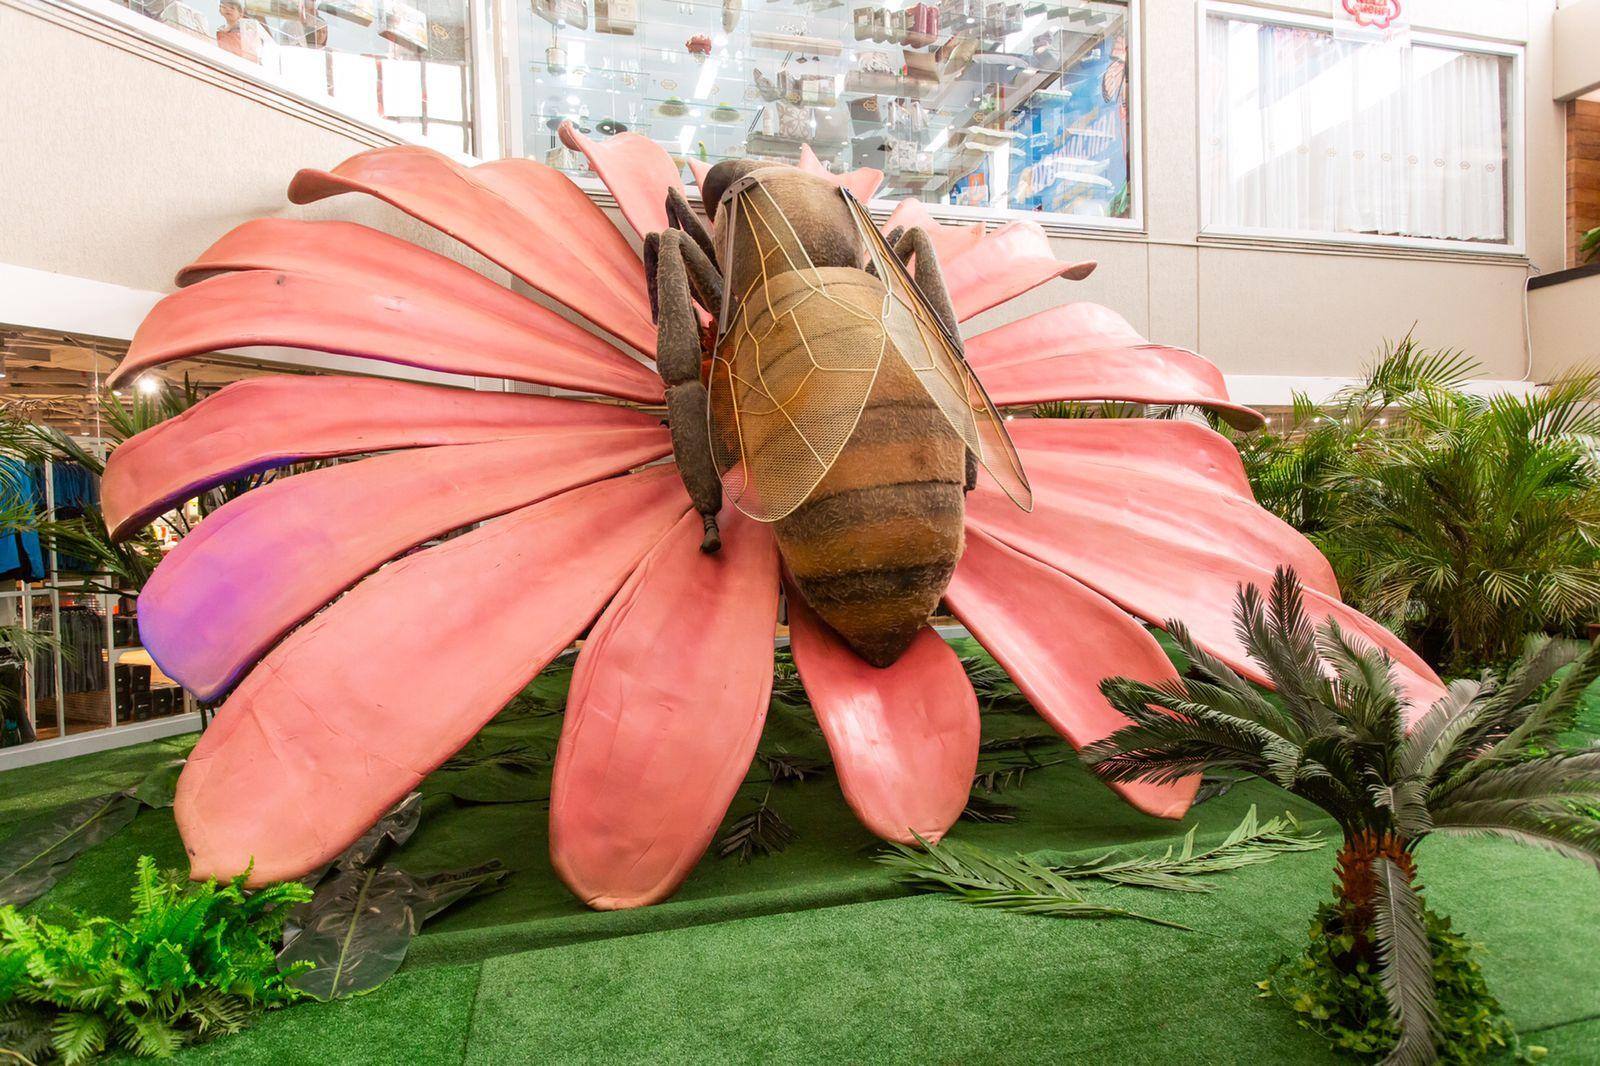 Exposição interativa “Natureza Gigante” ficará em exibição no mall entre os dias 1º e 31 de março